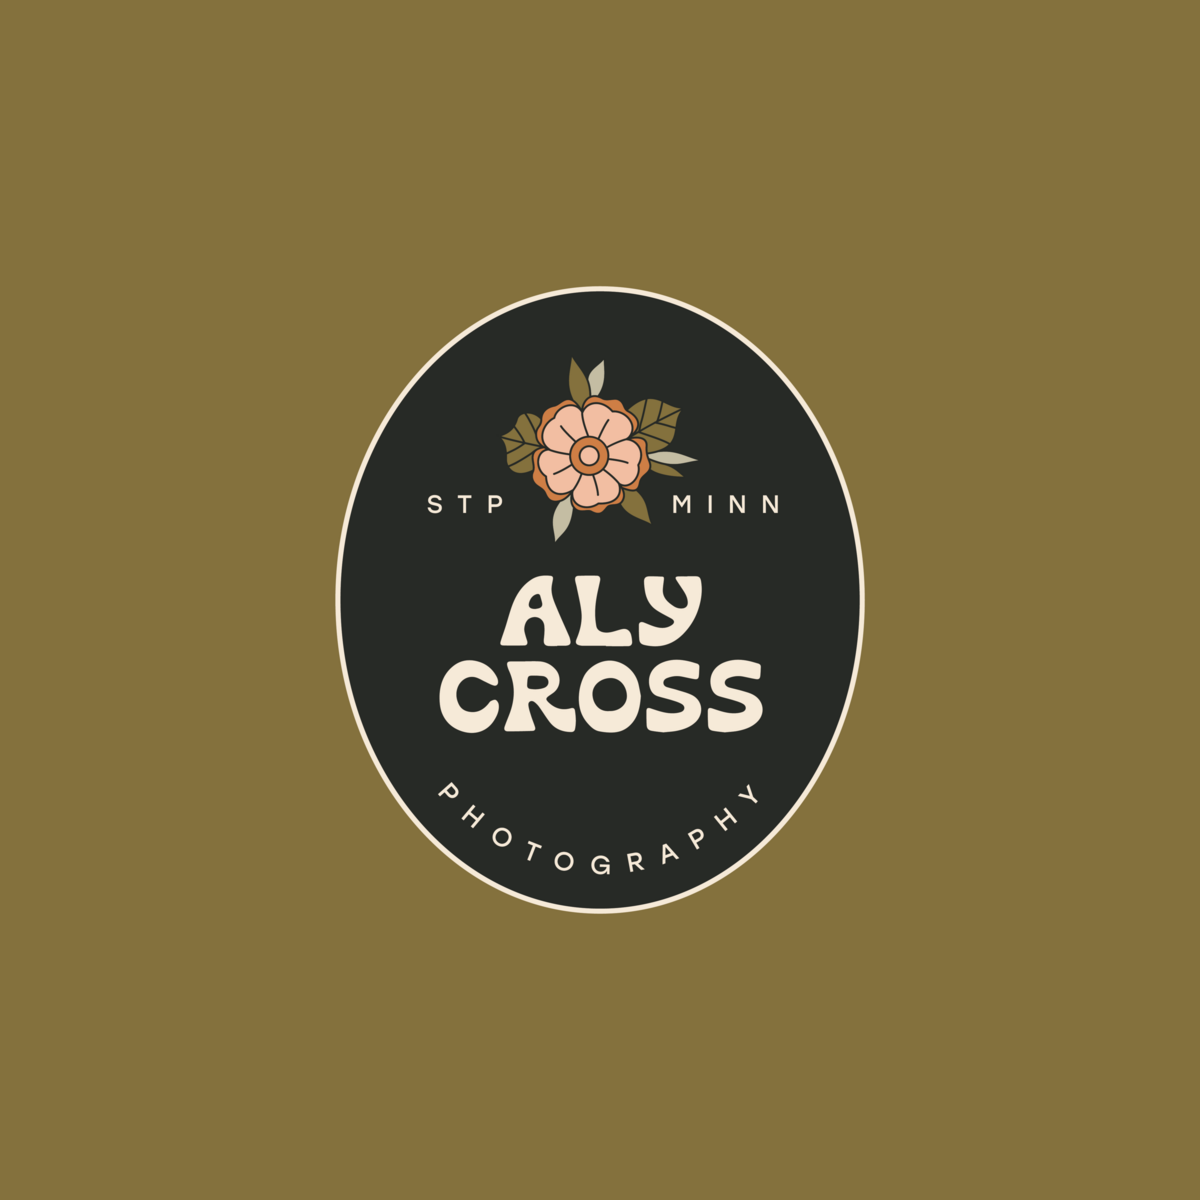 Aly Cross Social + Pinterest-01